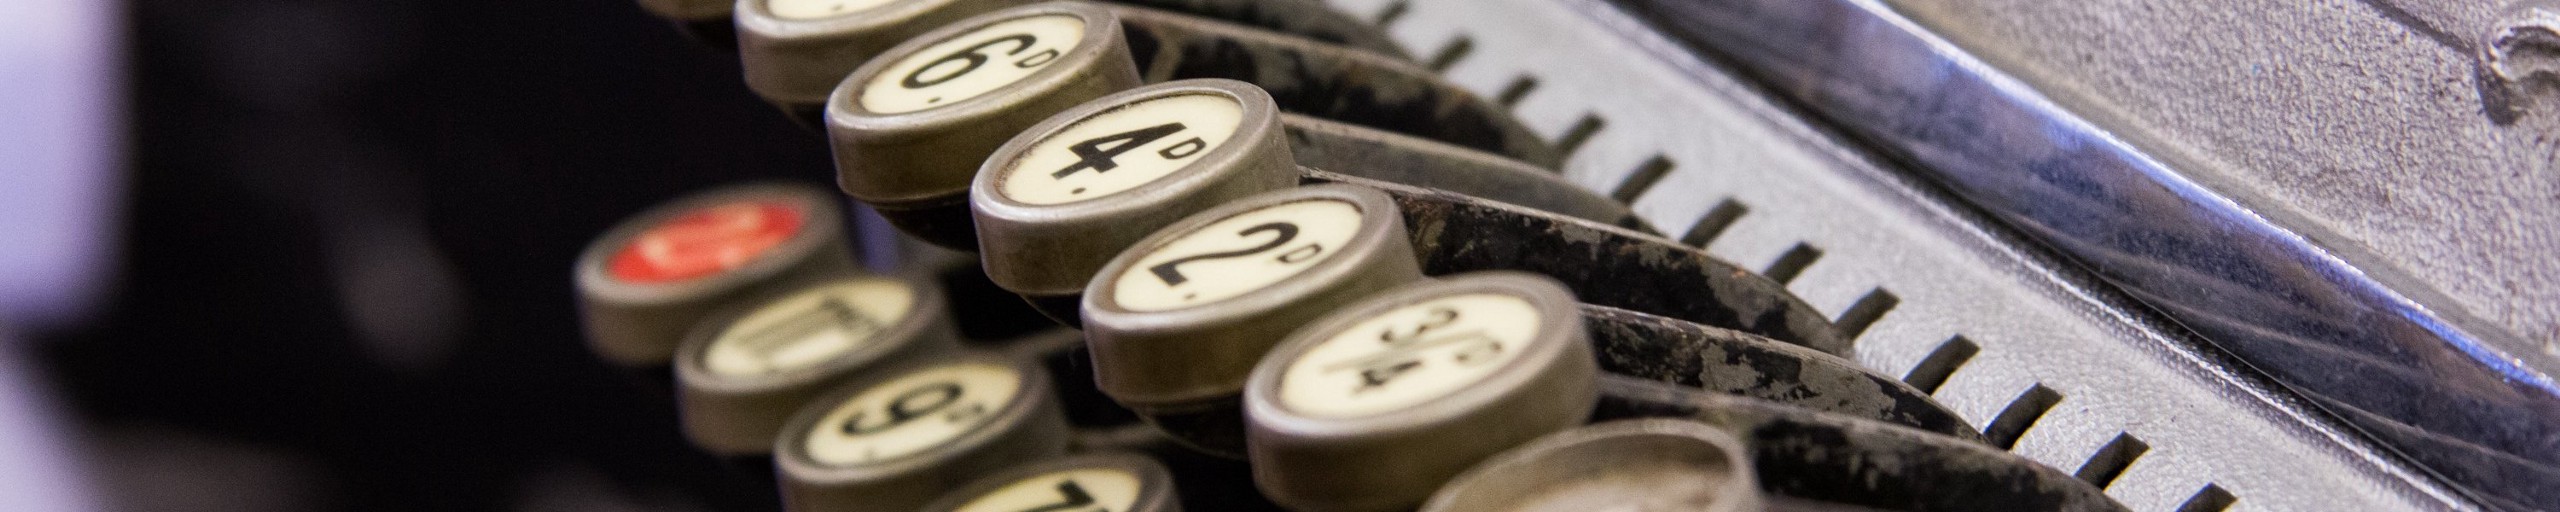 Close-up of a typewriter.